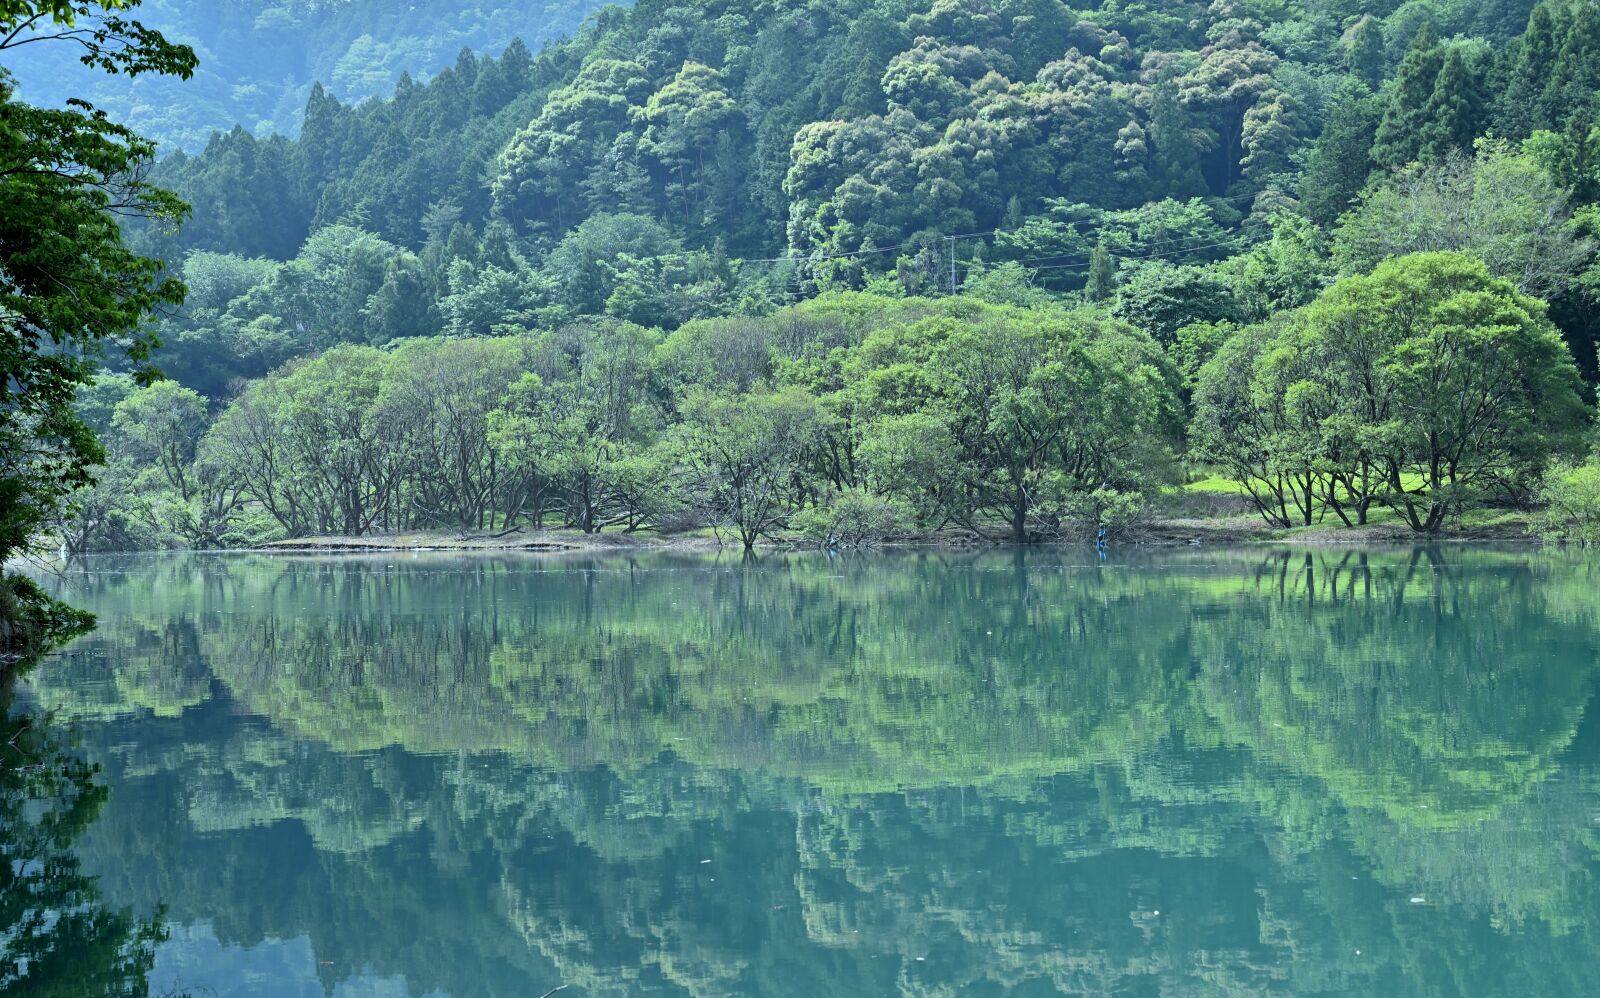 Nikon Nikkor Z 24-70mm F4 S sample photo. Lake, reflection, natural photography